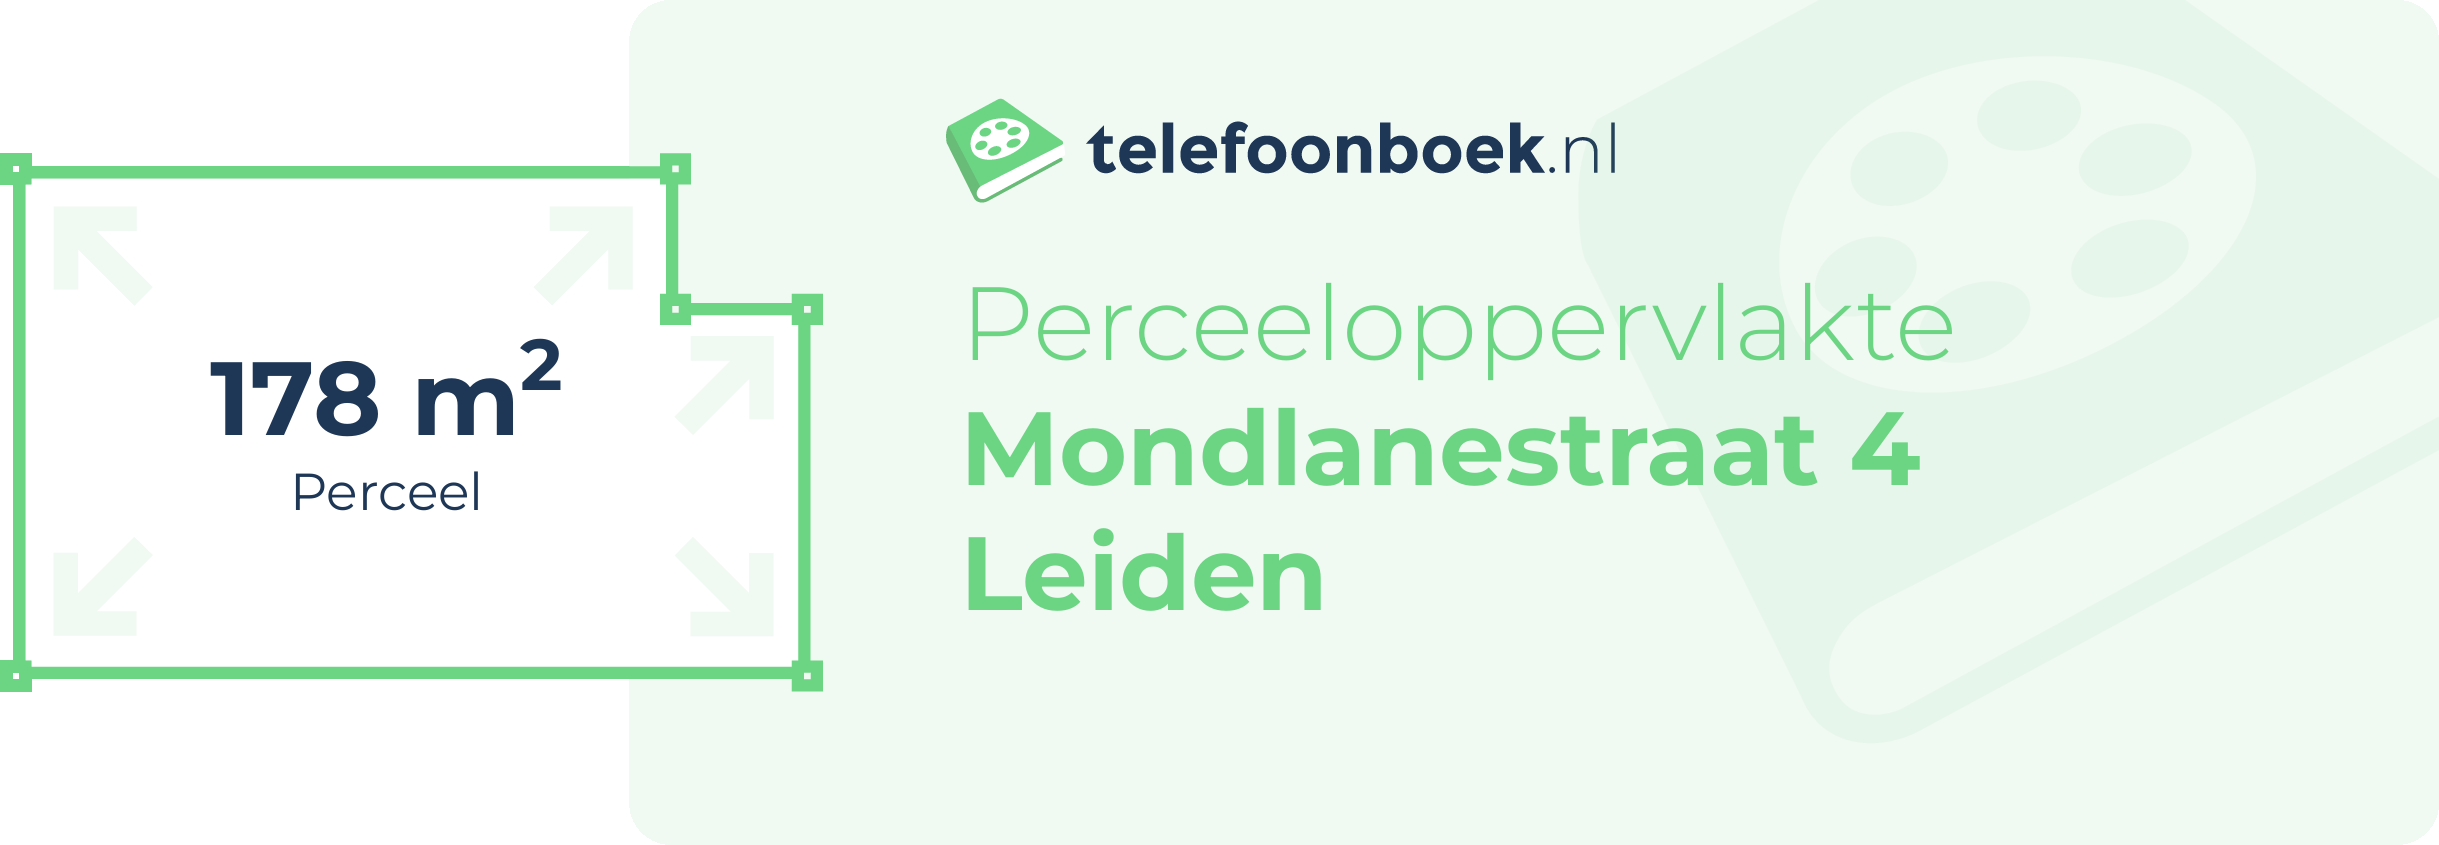 Perceeloppervlakte Mondlanestraat 4 Leiden